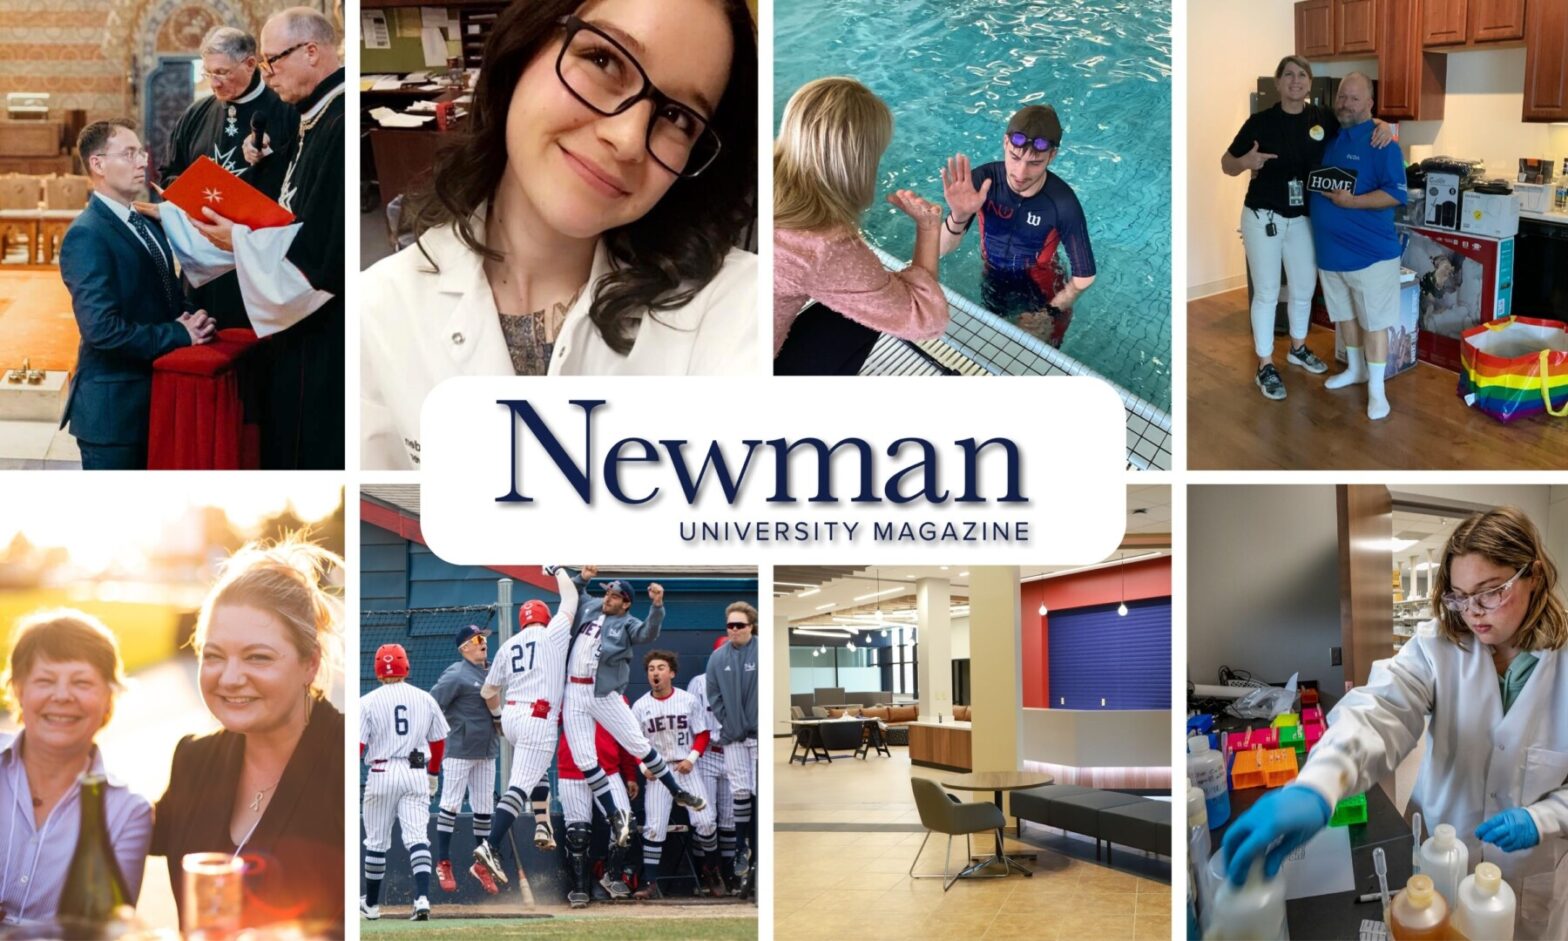 Newman University magazine